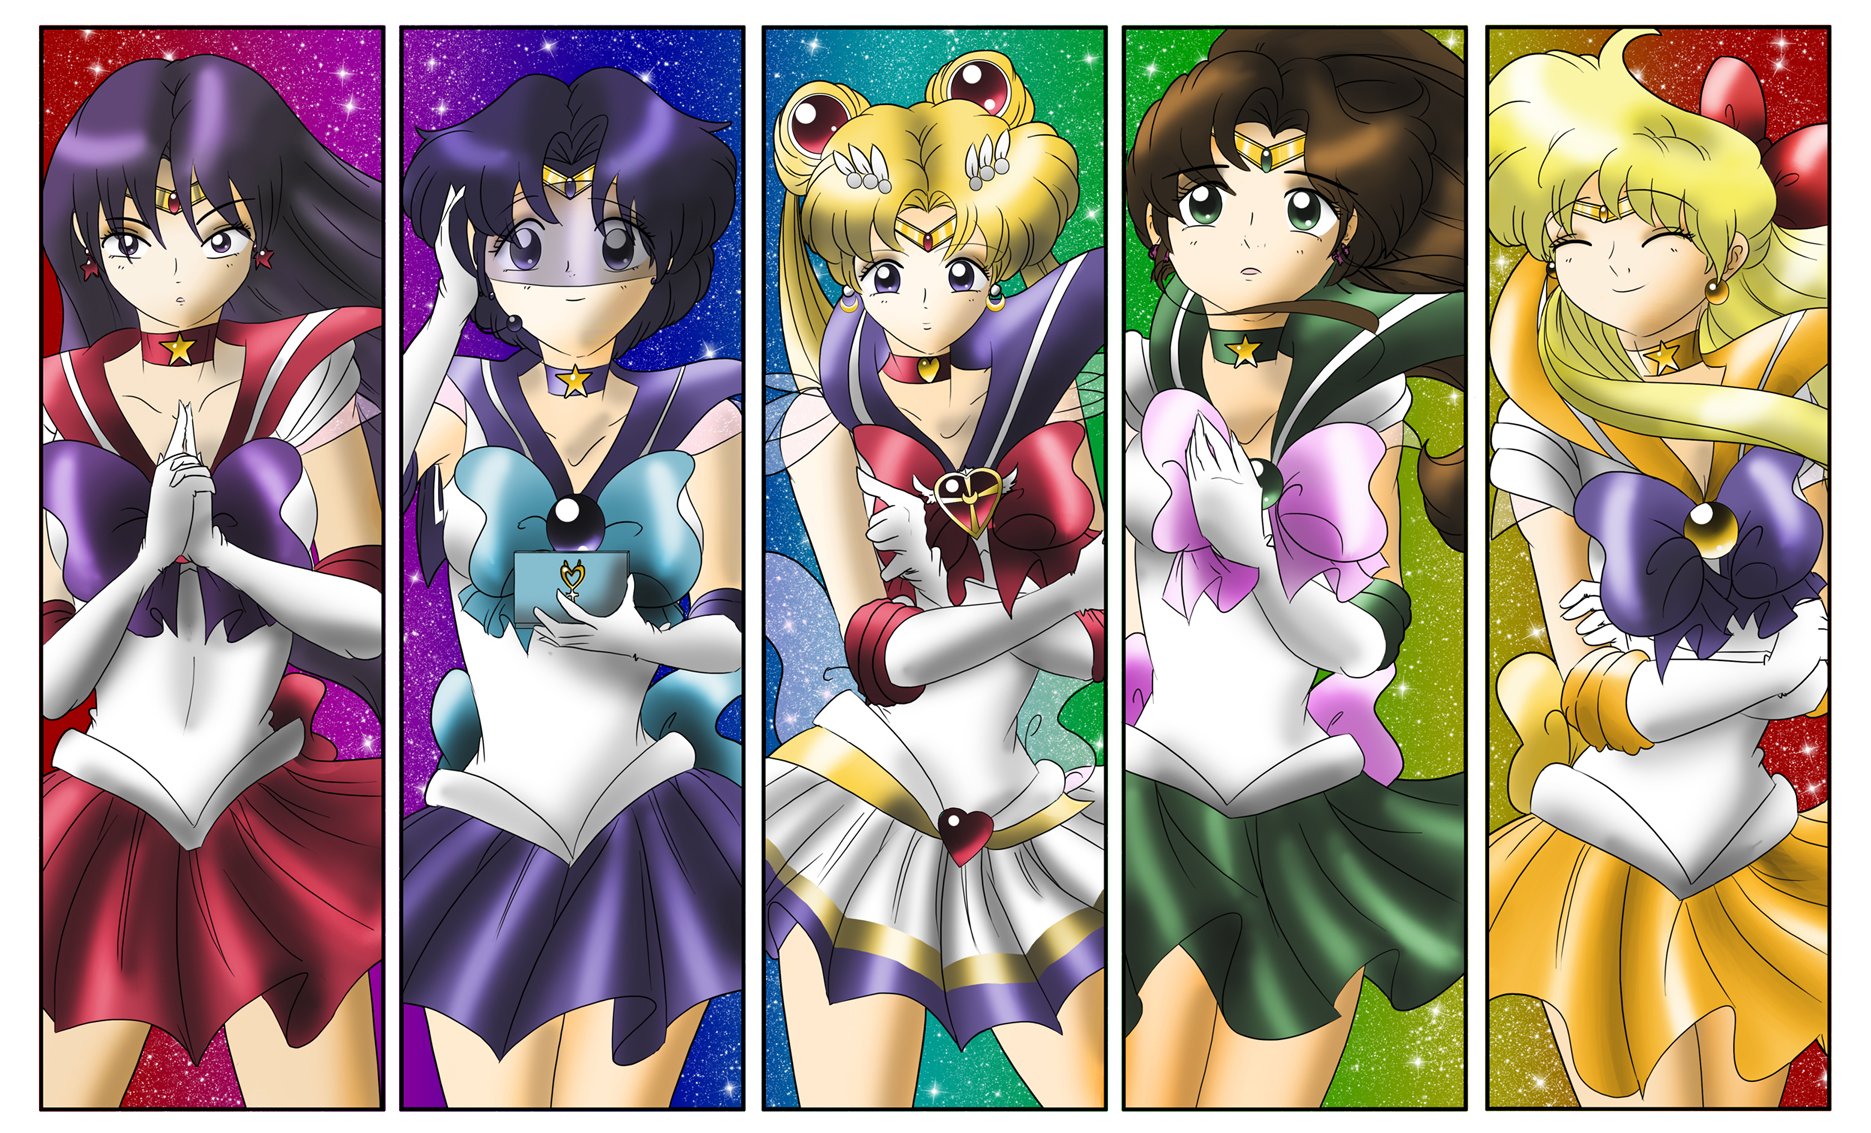 Fondos De Escritorio Sailor Moon Gratis Anime Wallpapers Ayuda a sailor moon a vestirse para su próxima batalla. fondos de escritorio sailor moon gratis